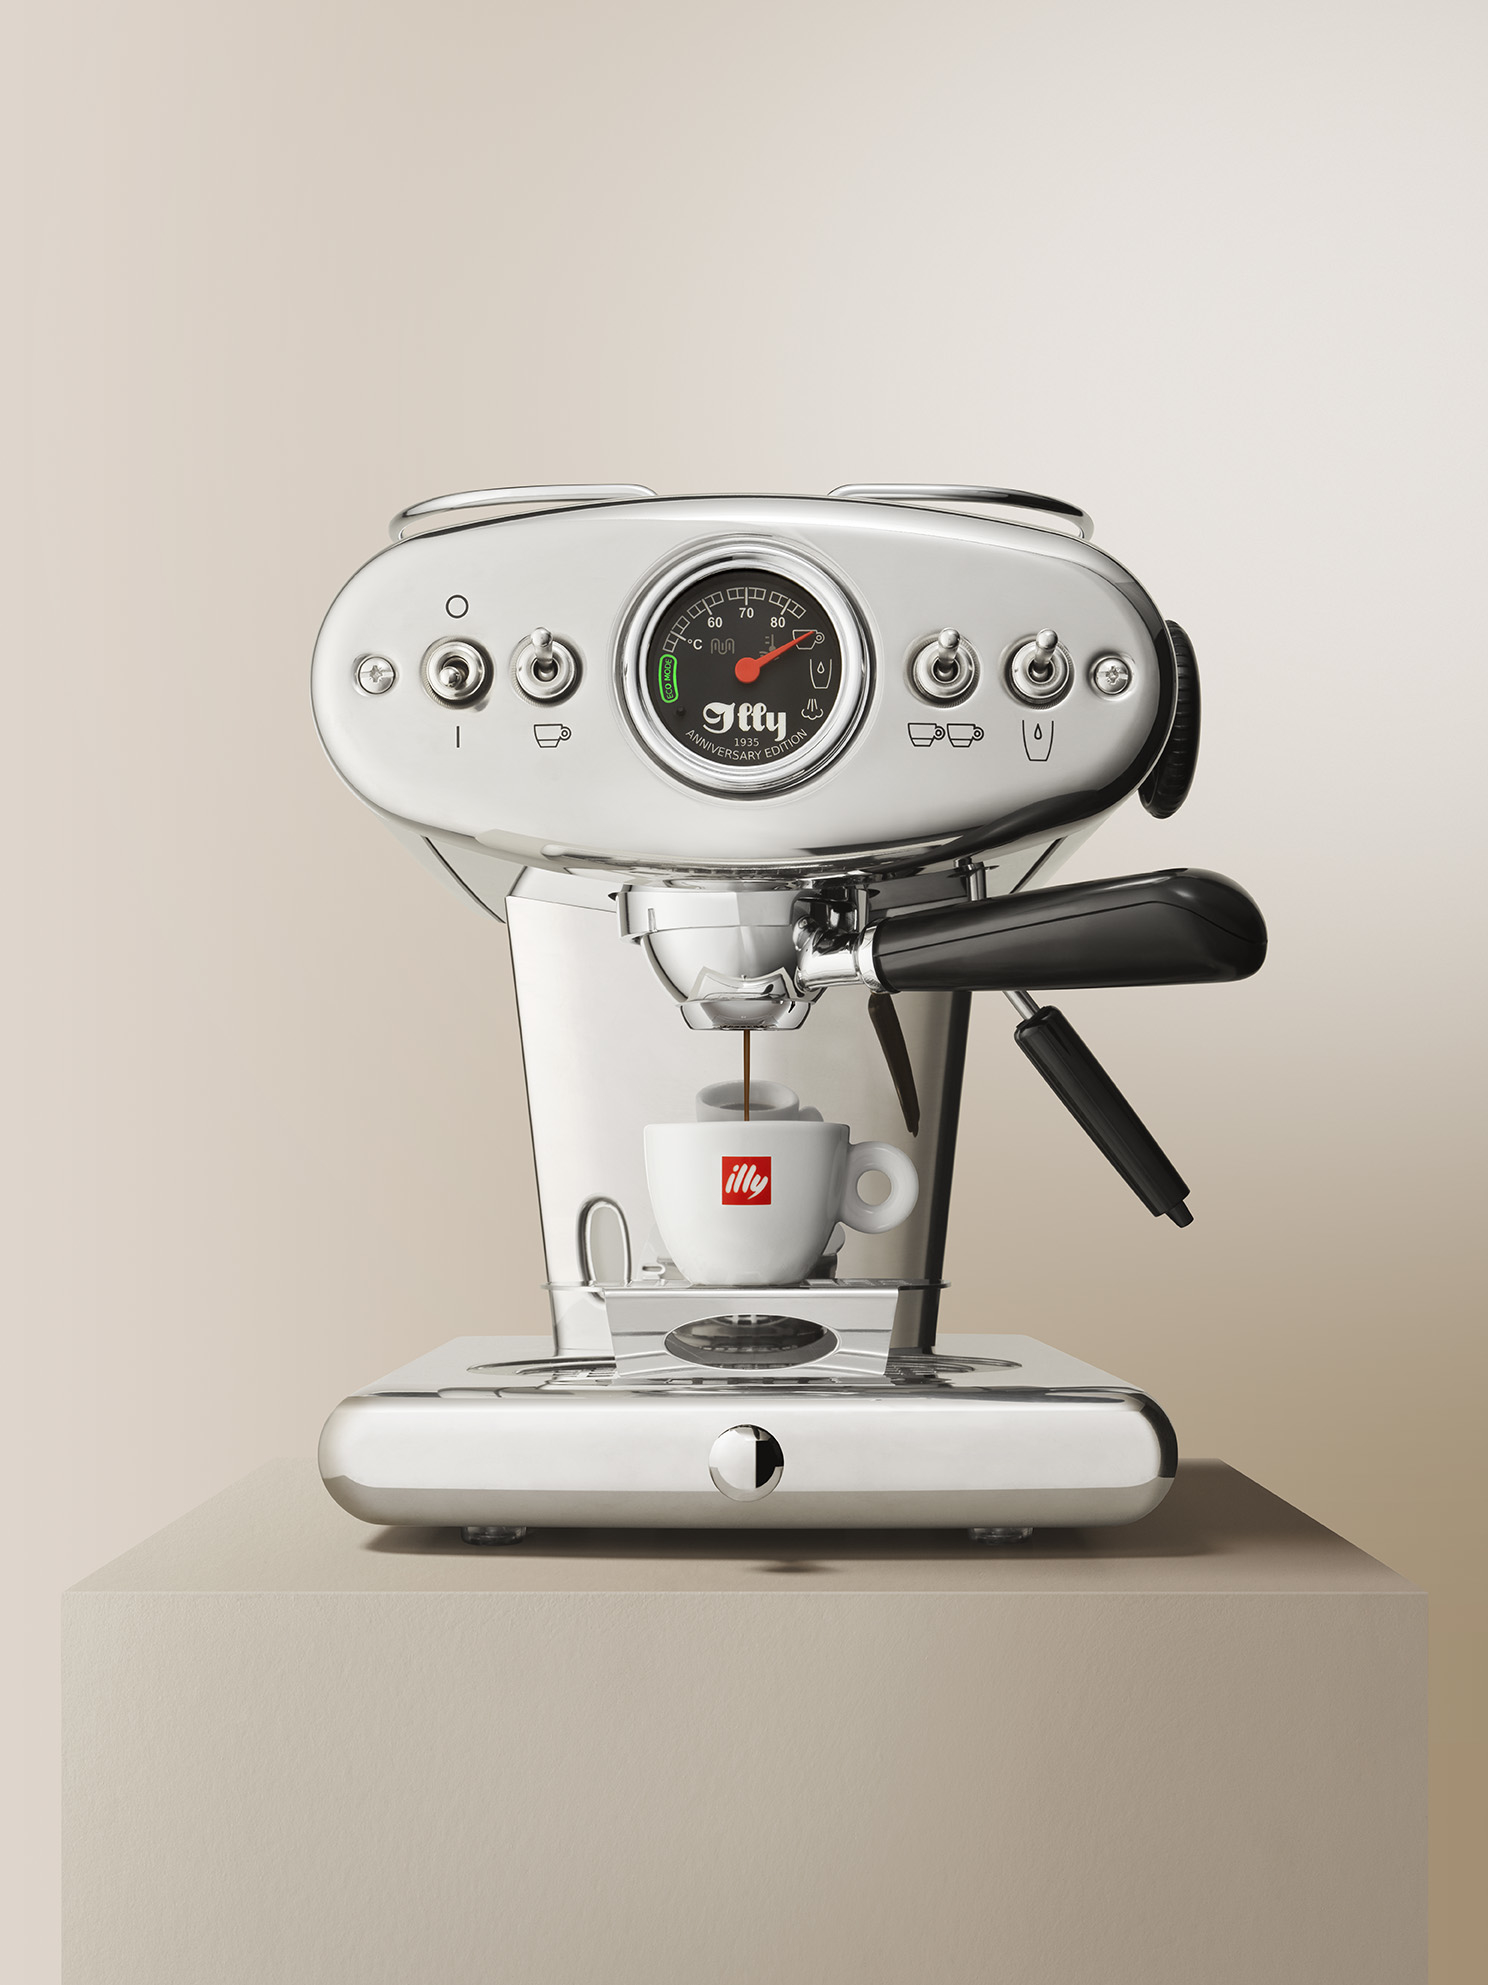 Machine à espresso pour café moulu - X1 Rouge - illy Shop